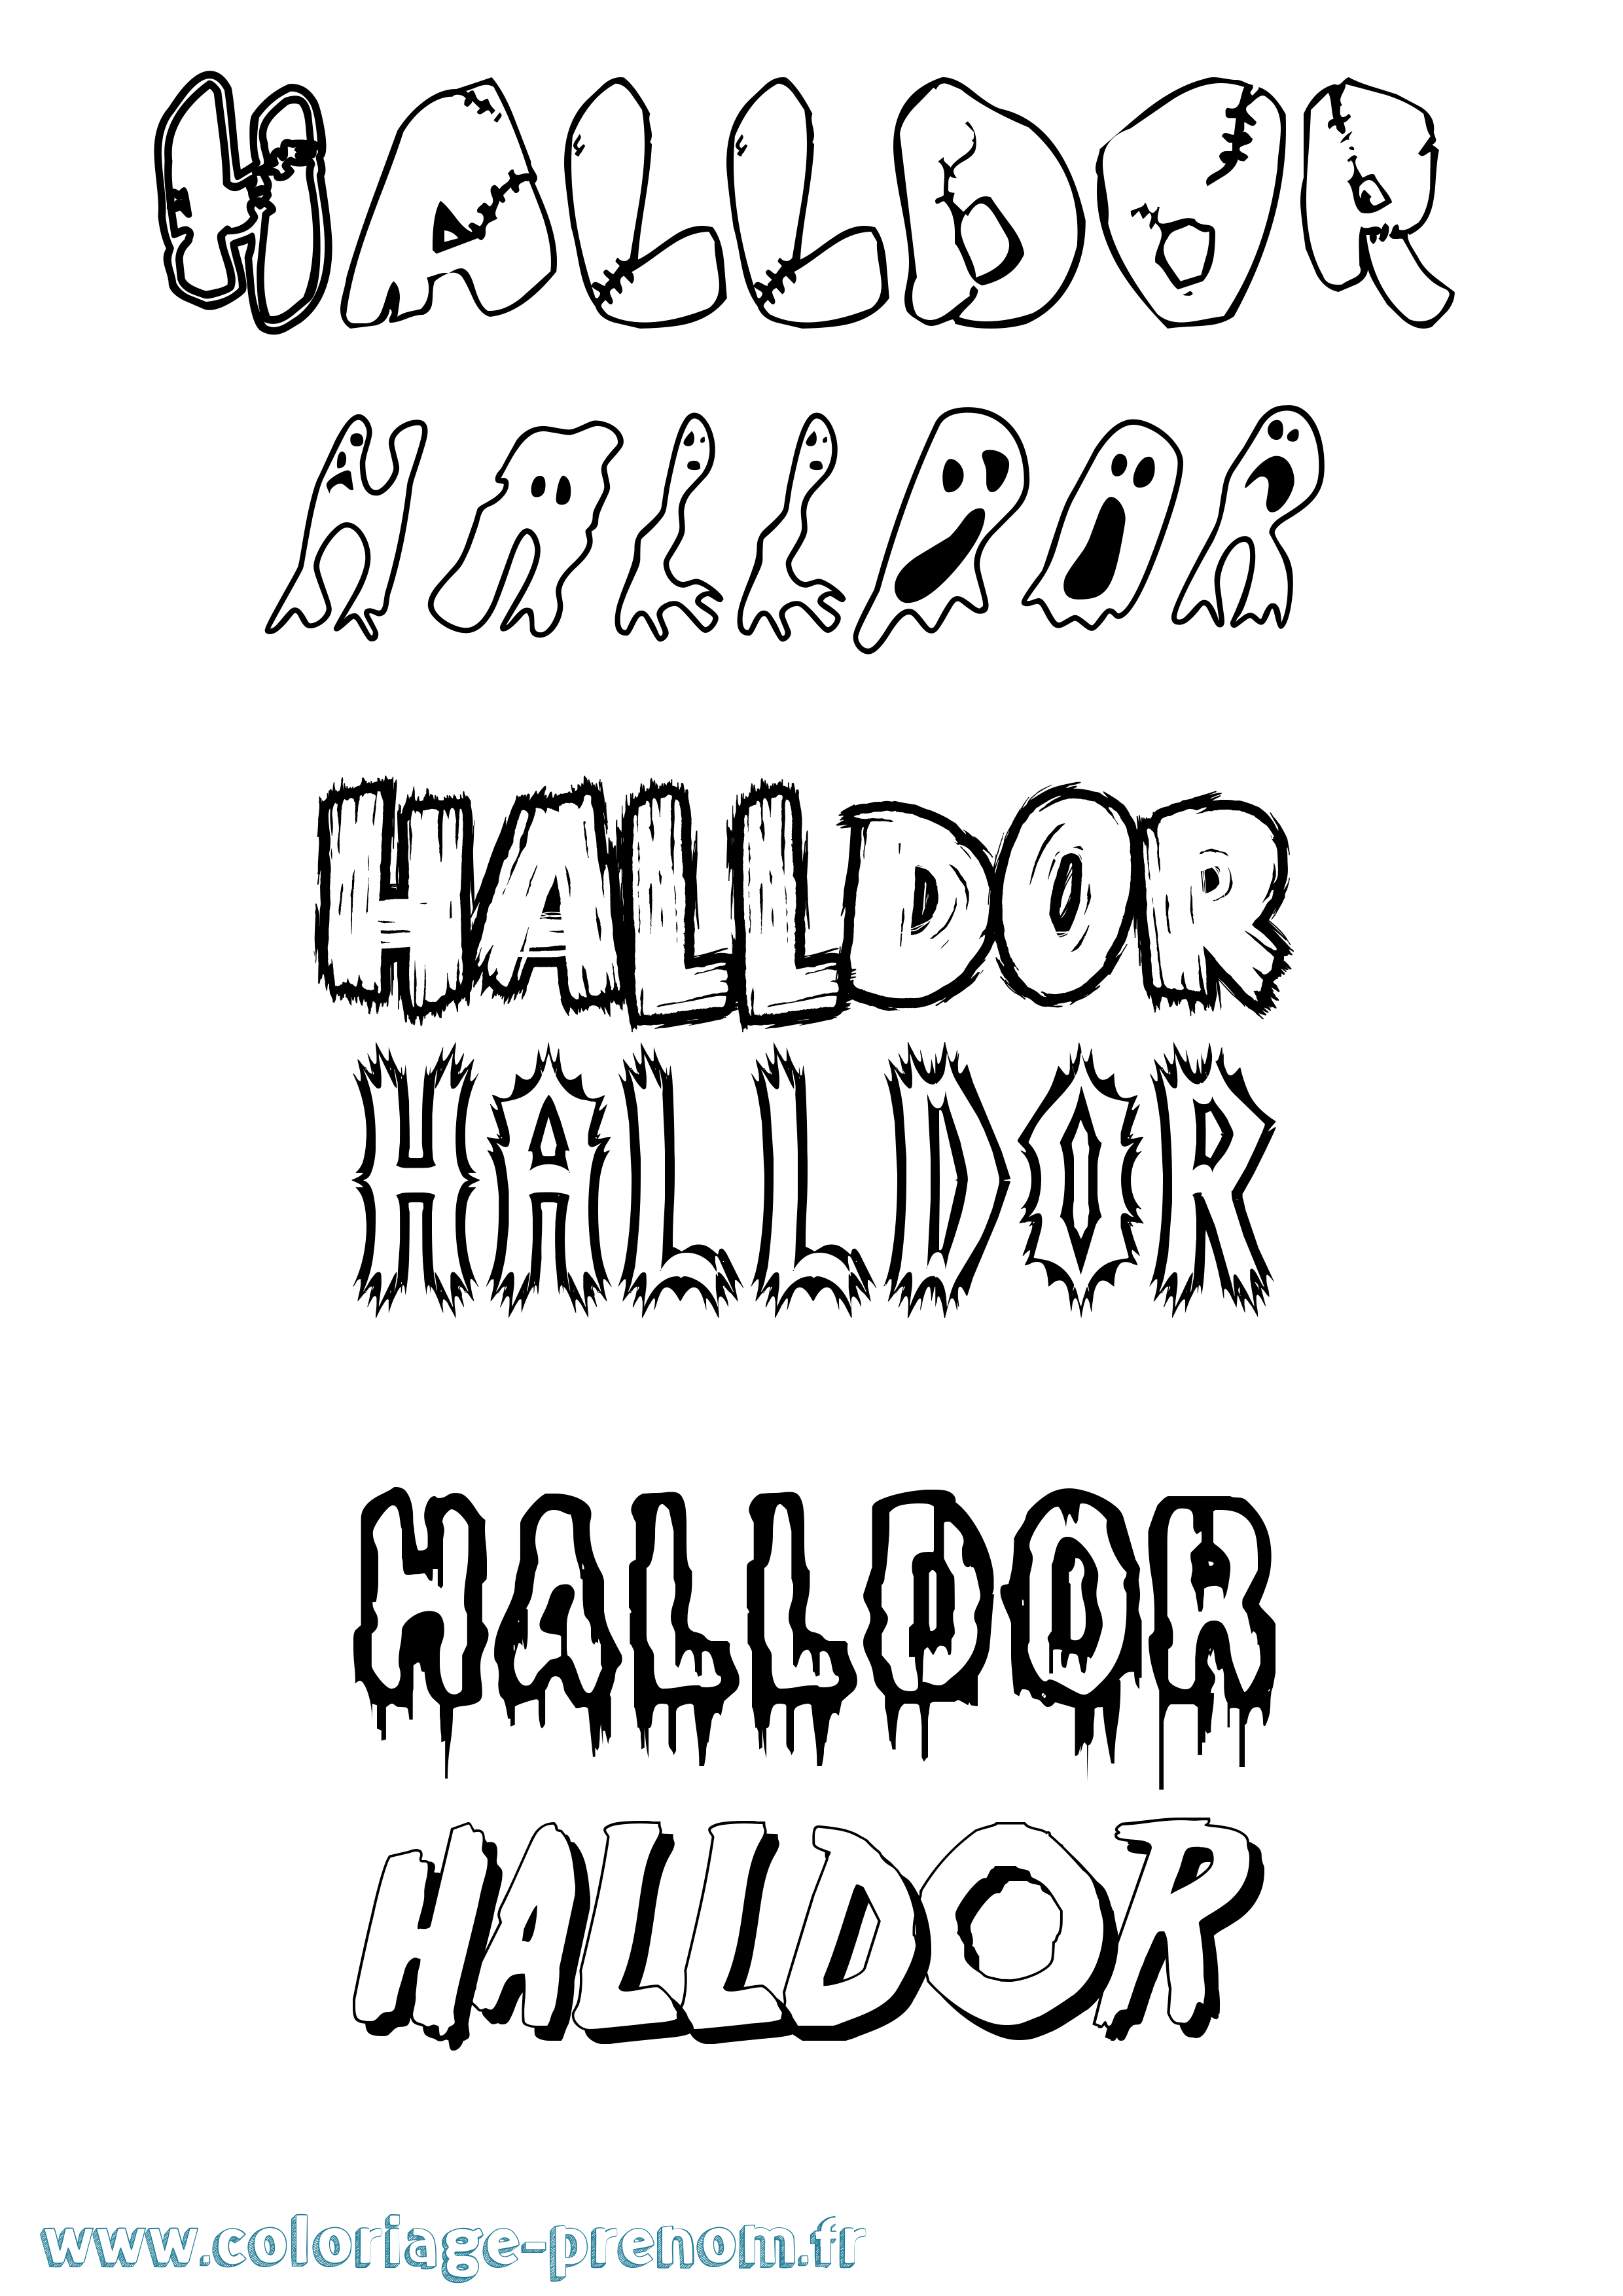 Coloriage prénom Halldor Frisson